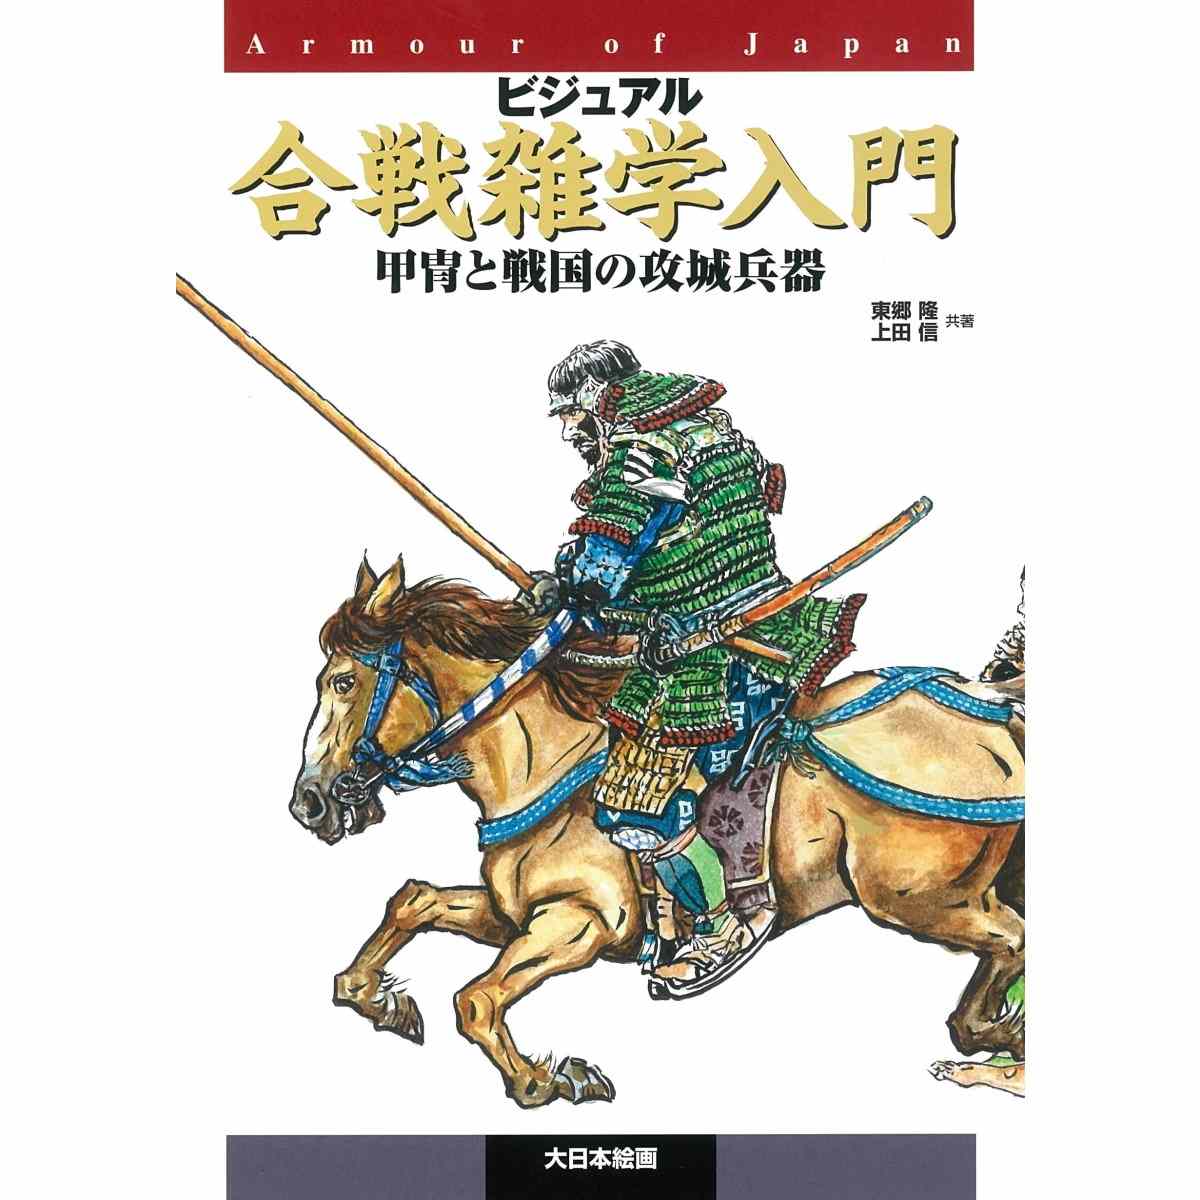 【新製品】ビジュアル合戦雑学入門 甲冑と戦国の攻城兵器